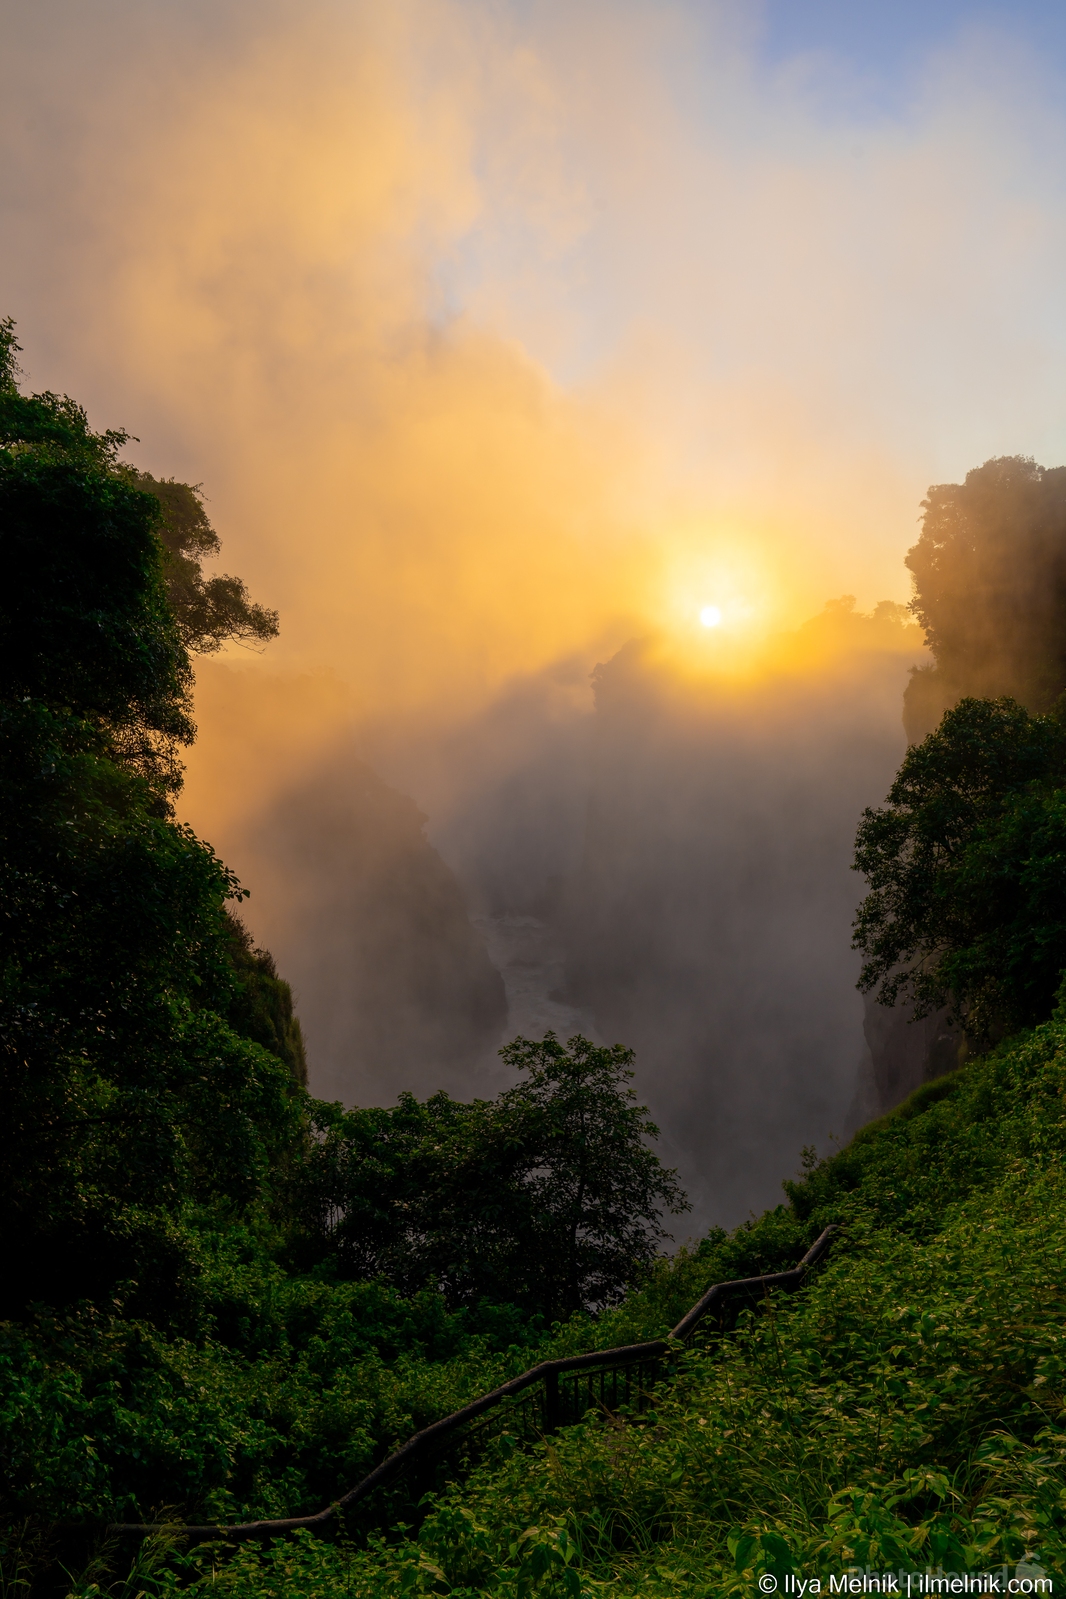 Image of Victoria Falls - Mosi-oa-Tunya - Zimbabwe by Ilya Melnik